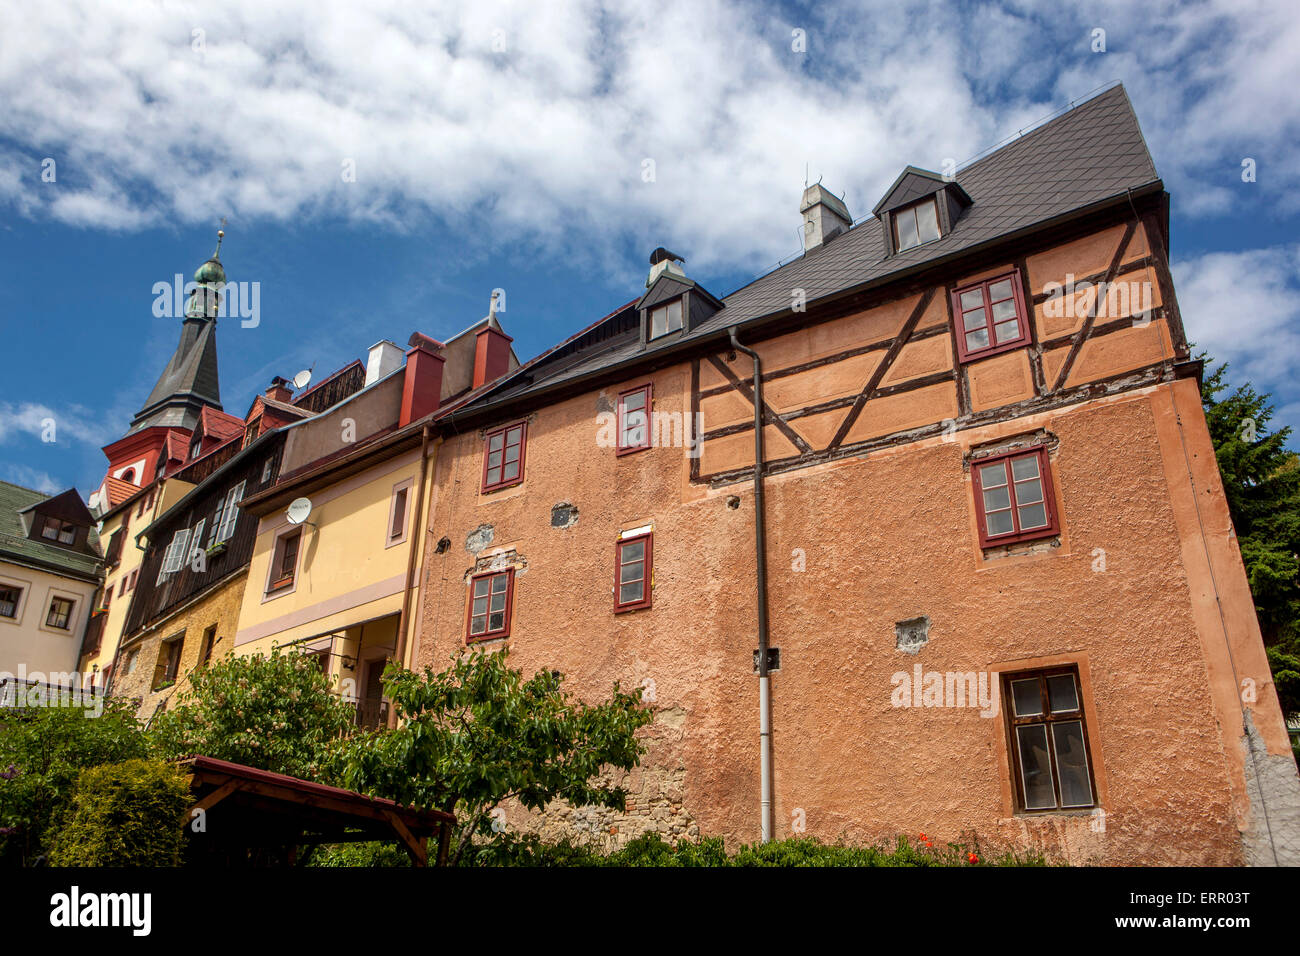 Vieille ville historique de Loket nad OHRI, région de Karlovy Vary, Bohême occidentale, République tchèque Banque D'Images